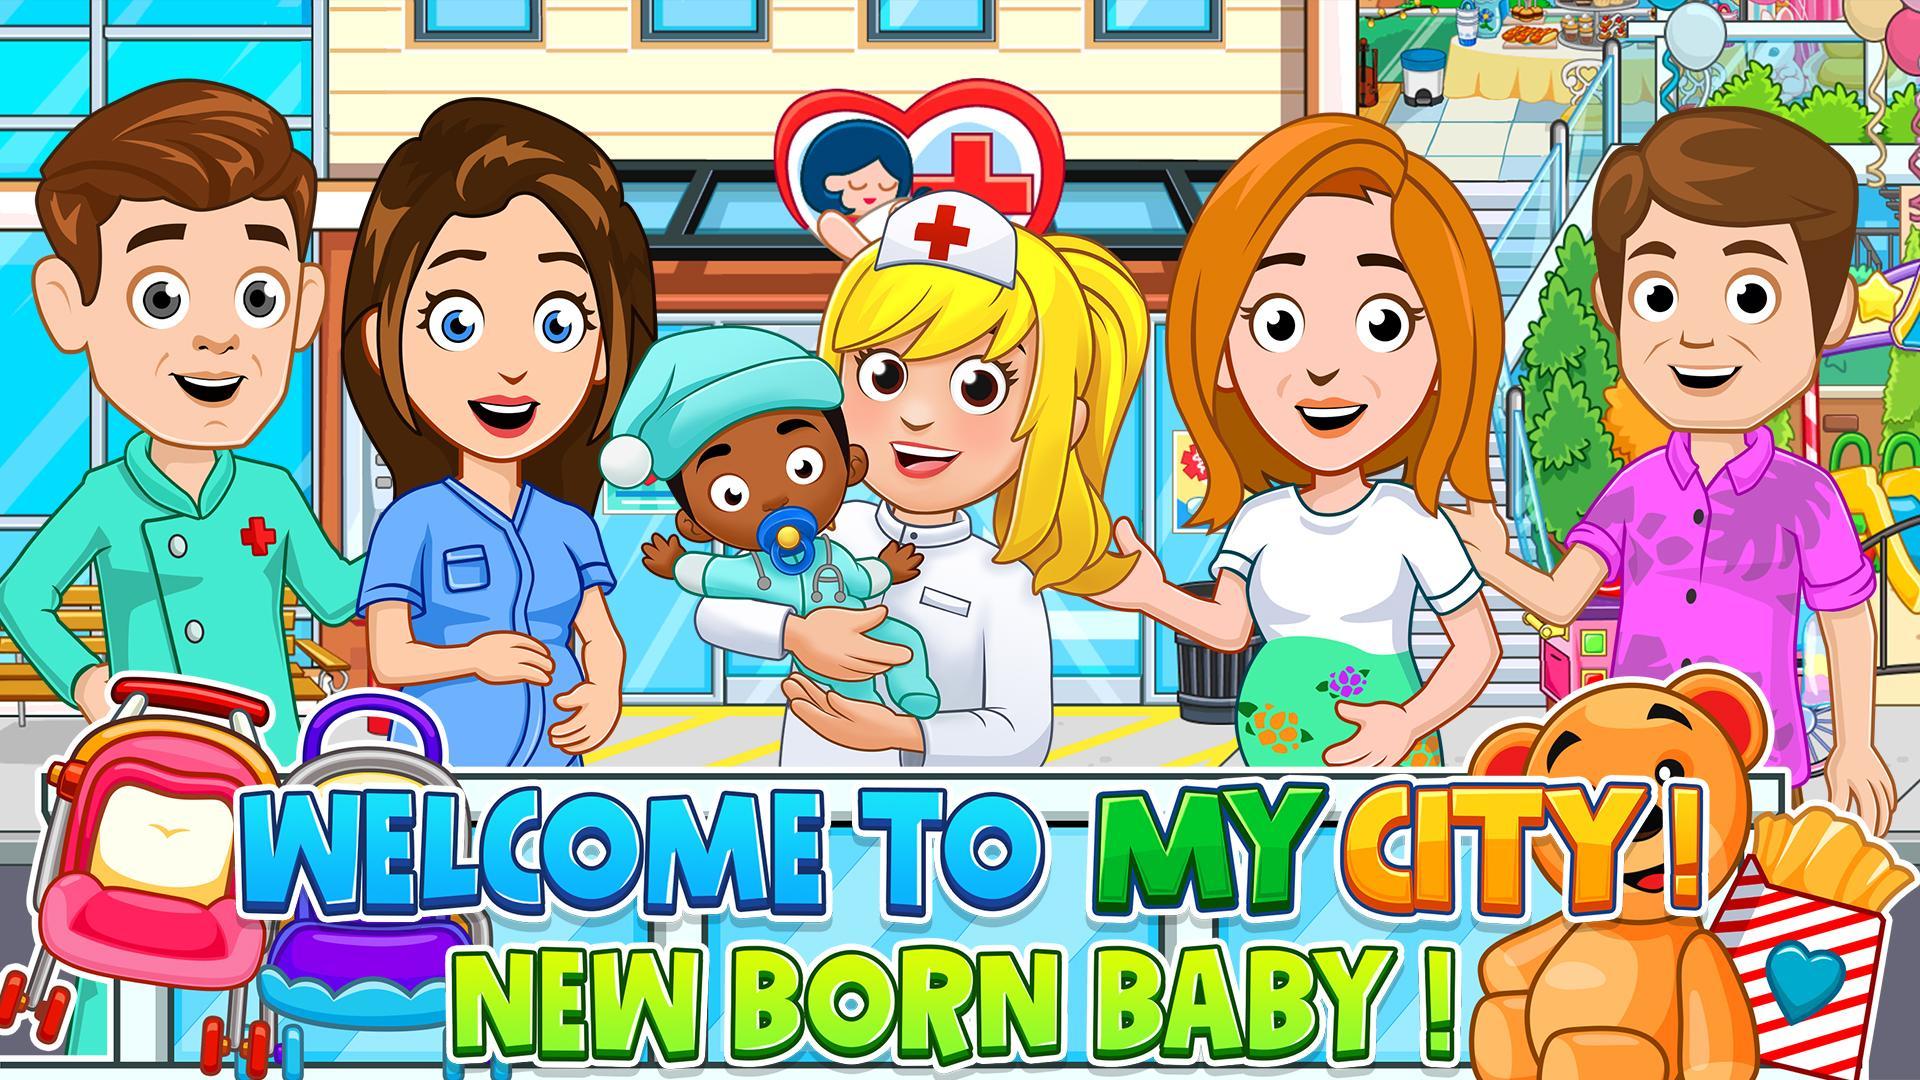 Screenshot 1 of My City : Newborn baby 4.0.2